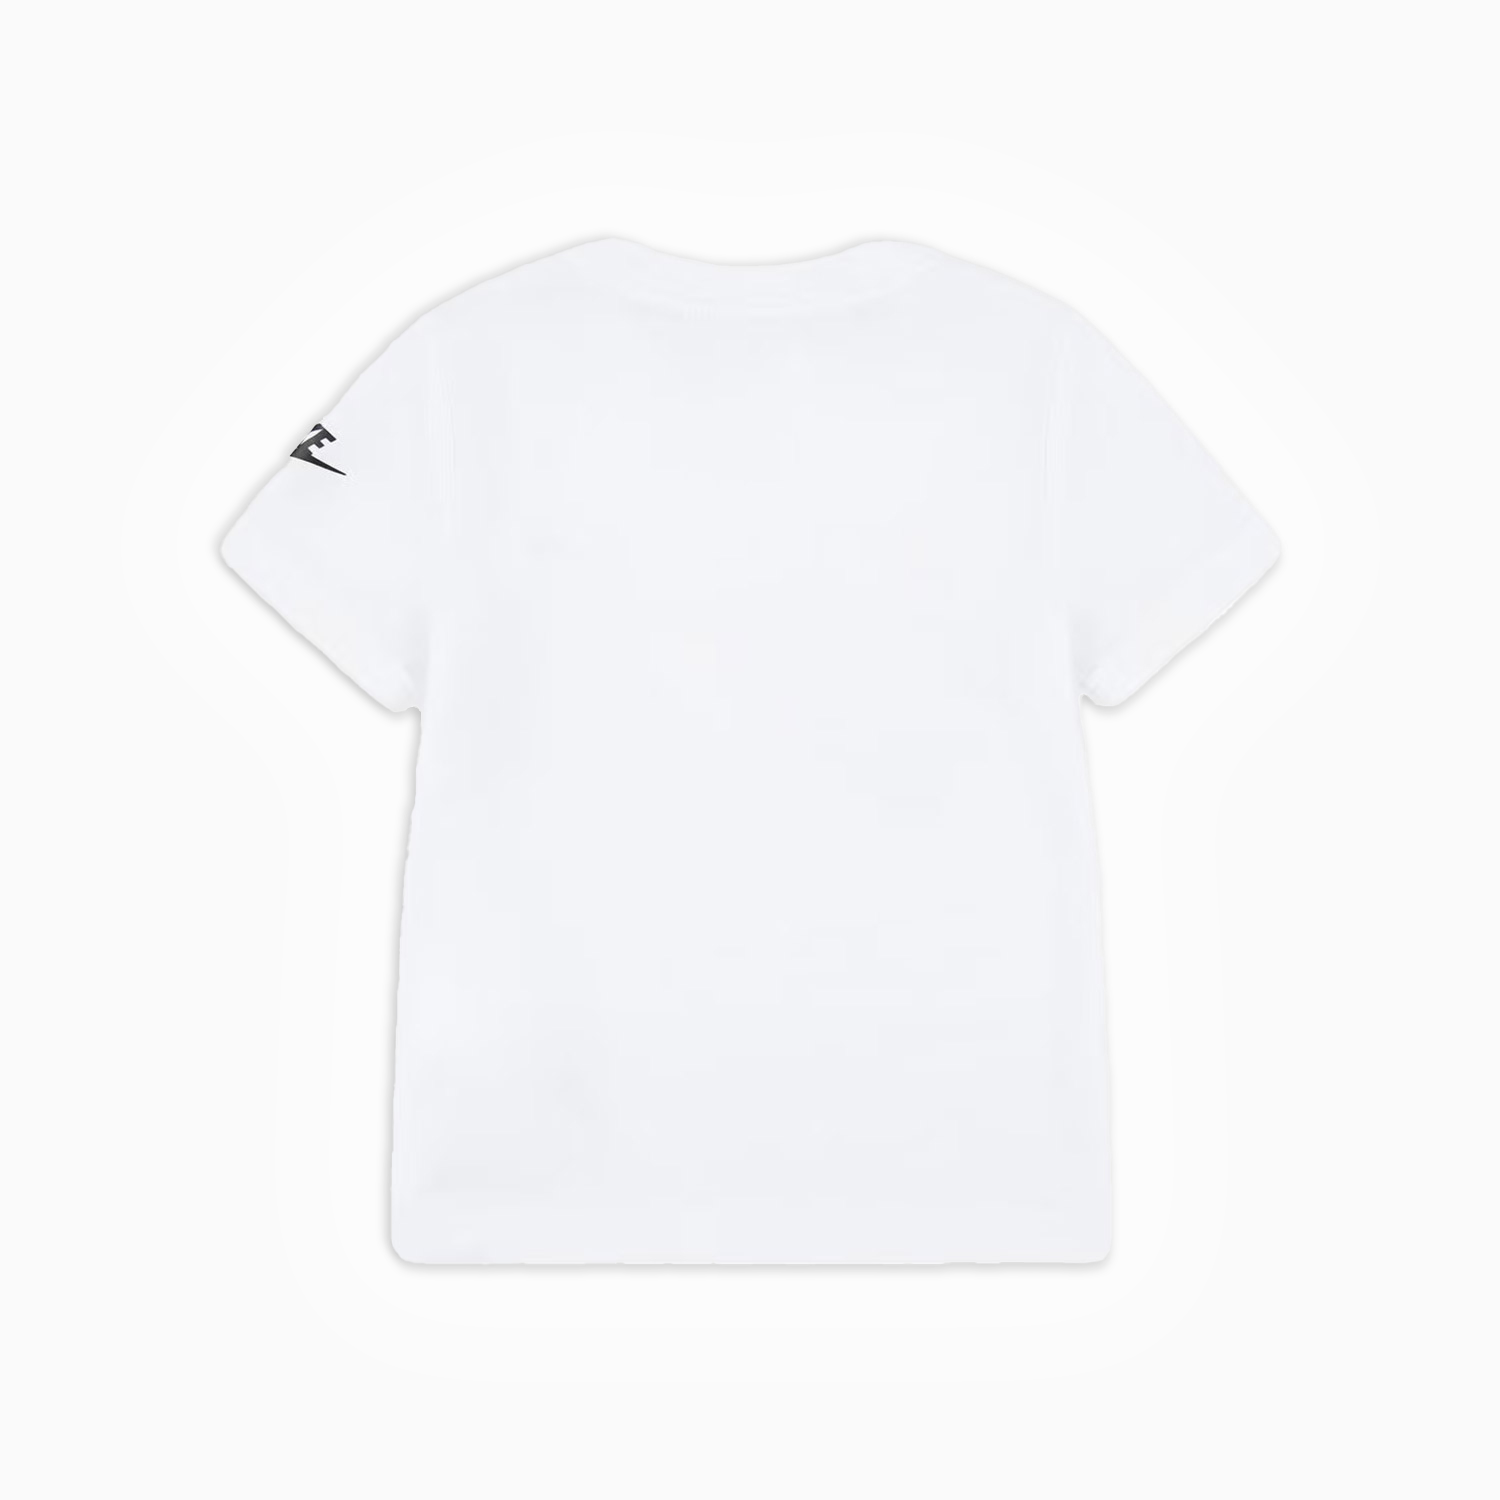 nike-kids-sportswear-futura-evergreen-t-shirt-76j575-001.